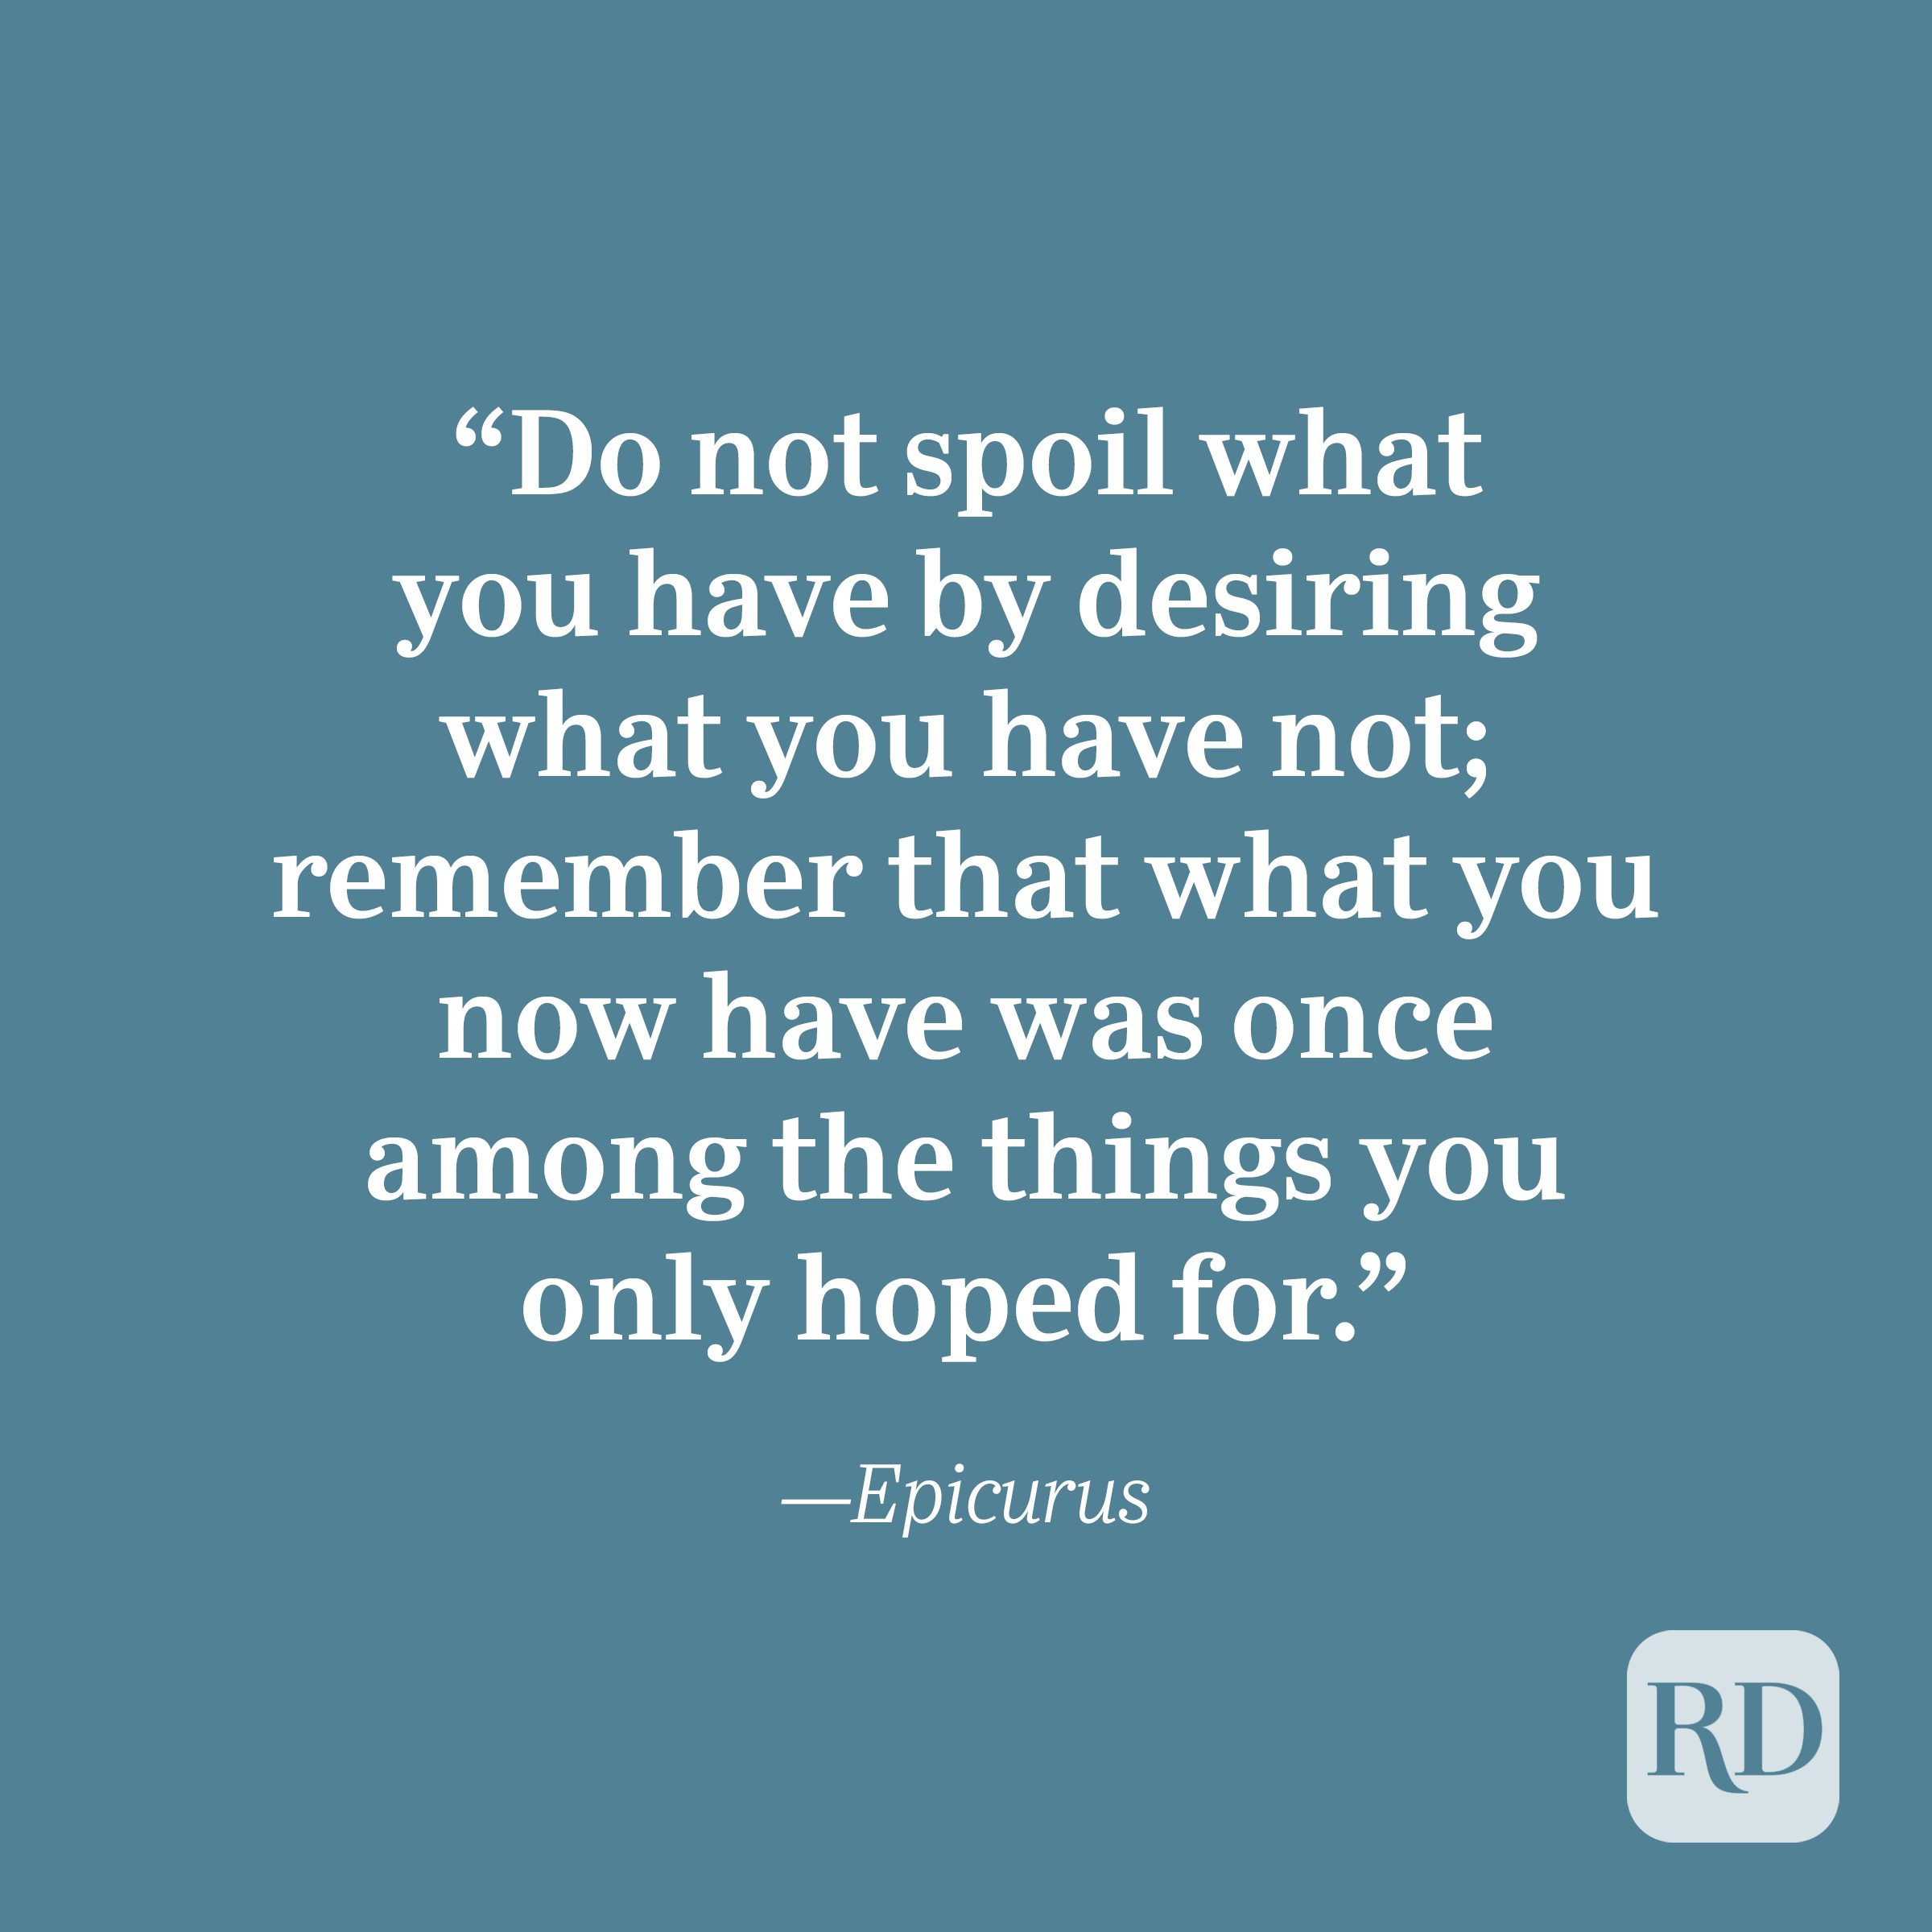 Epicurus quote about gratitude.